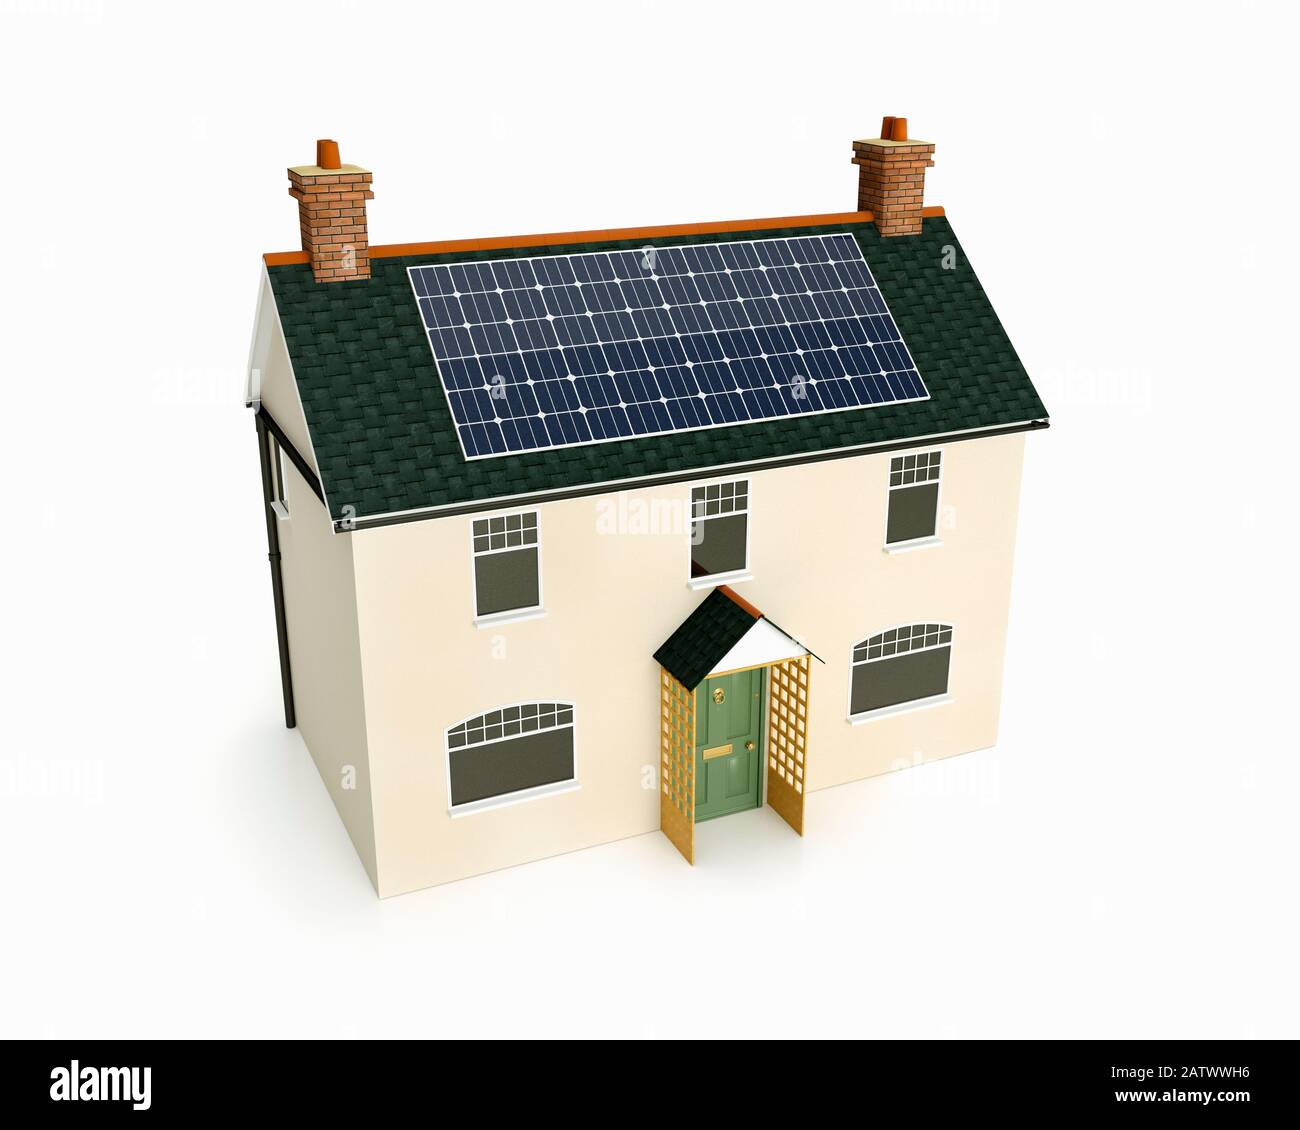 Modèle d'une ancienne maison de campagne britannique traditionnelle avec panneaux solaires montés sur le toit Banque D'Images